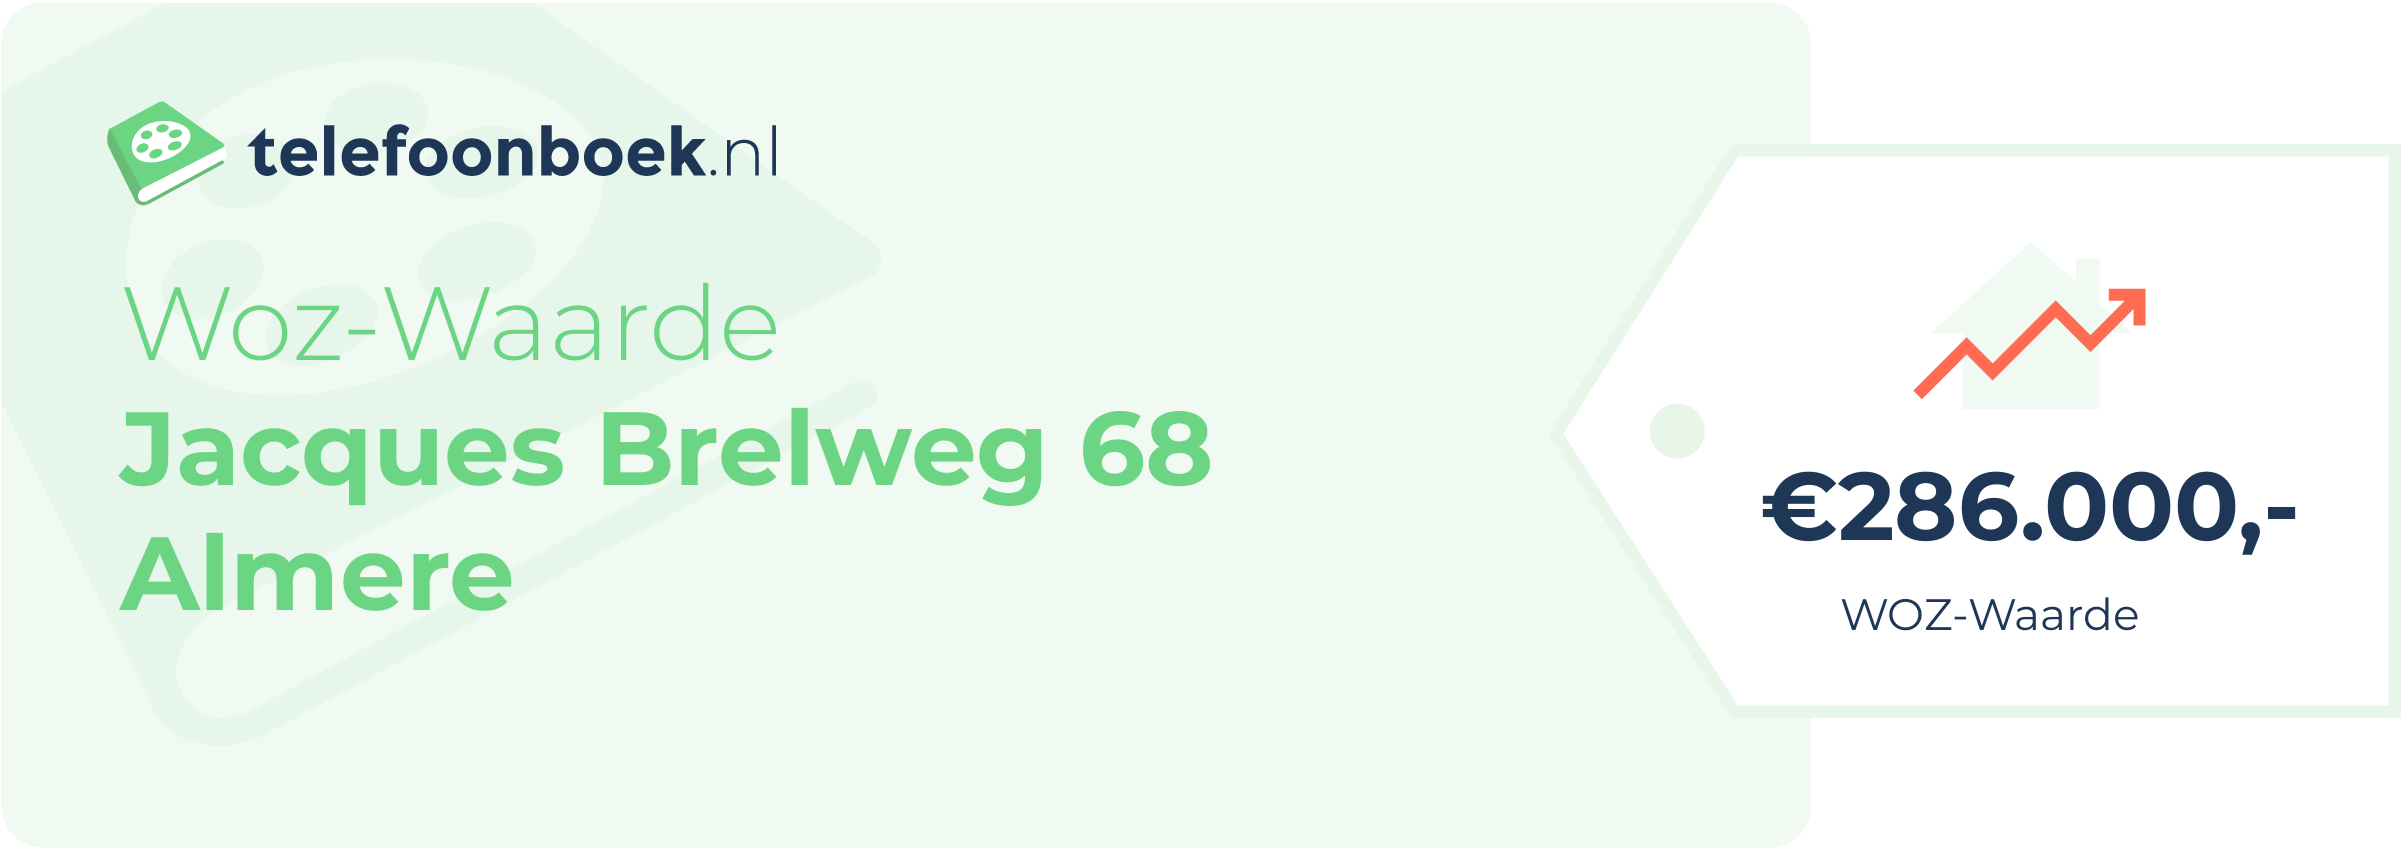 WOZ-waarde Jacques Brelweg 68 Almere